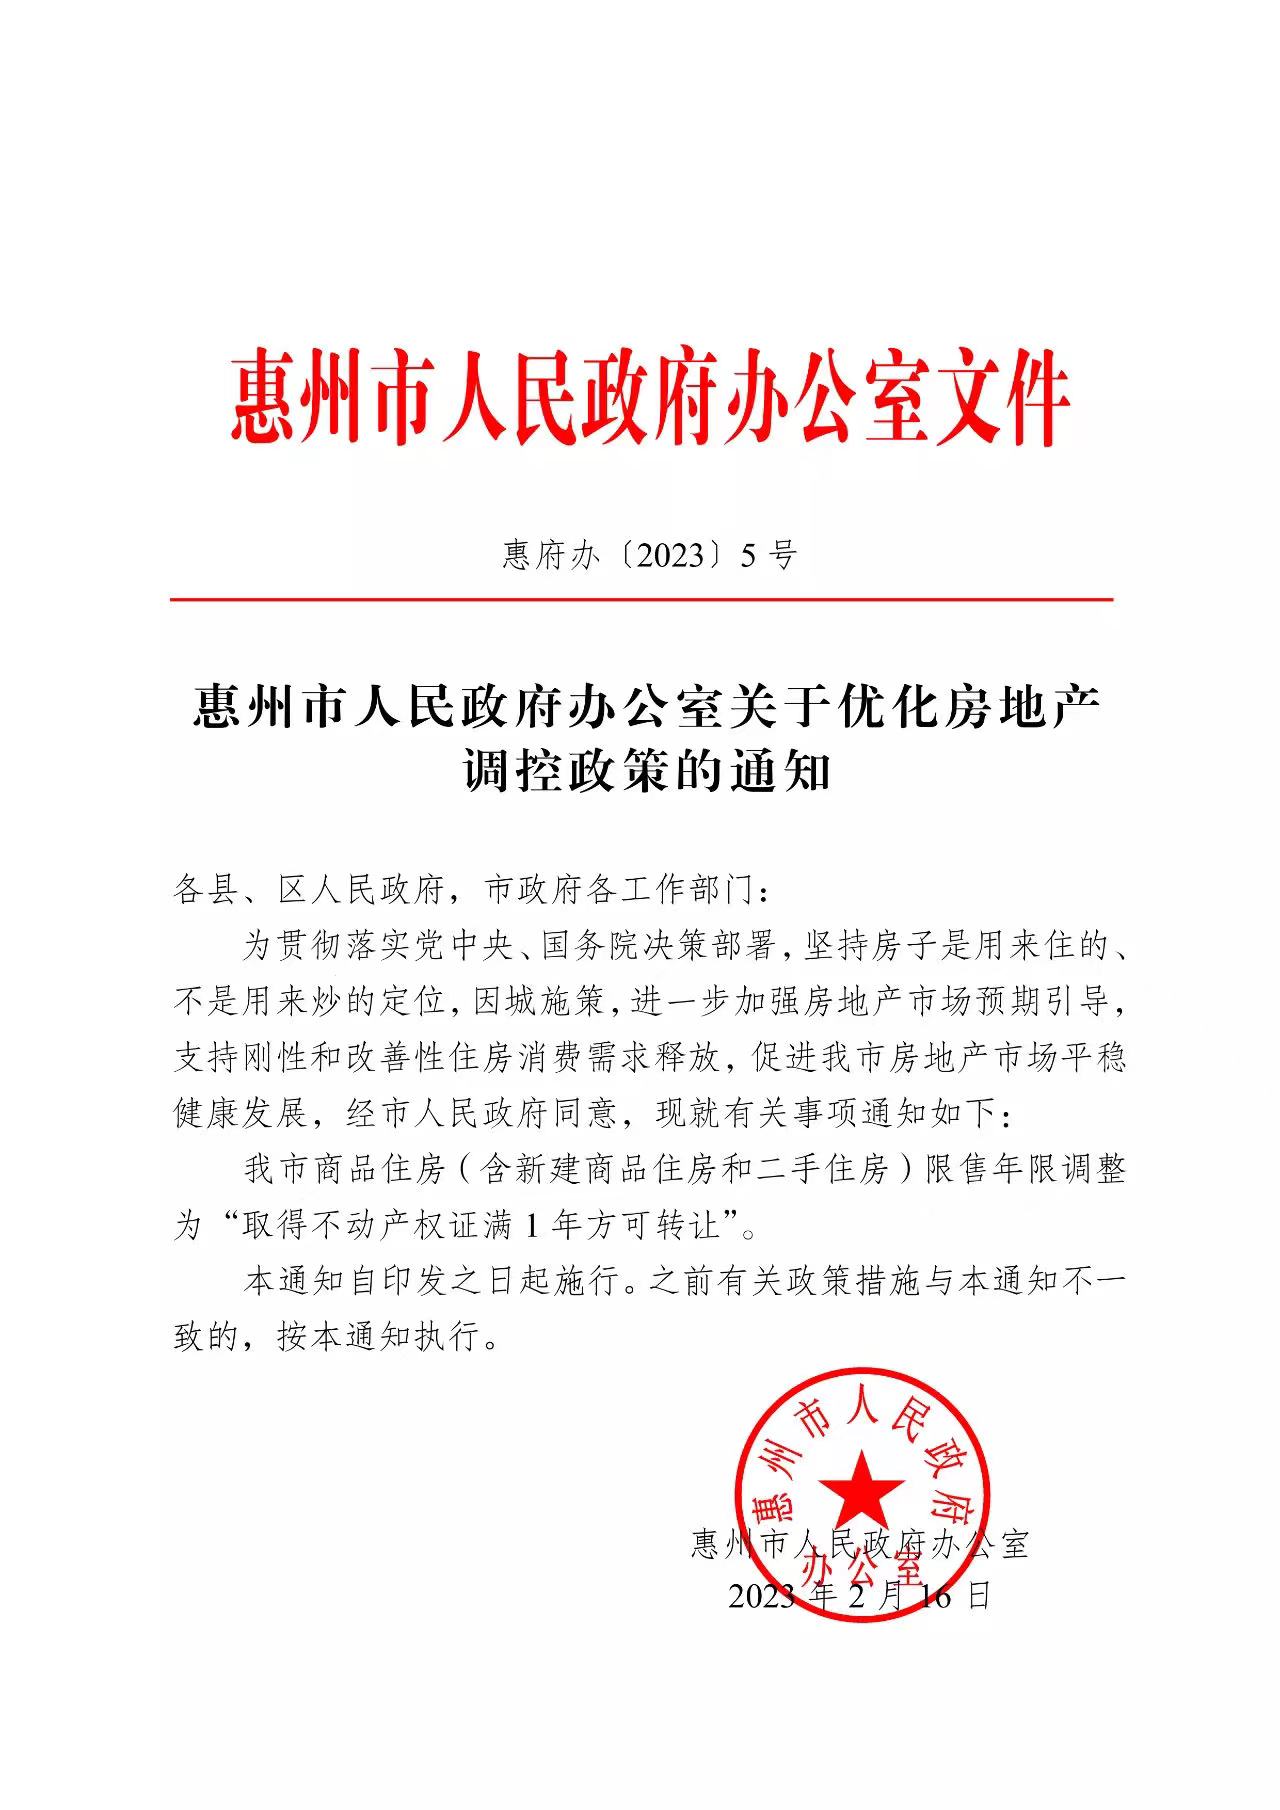 广东惠州：商品住房限售年限从3年减为1年